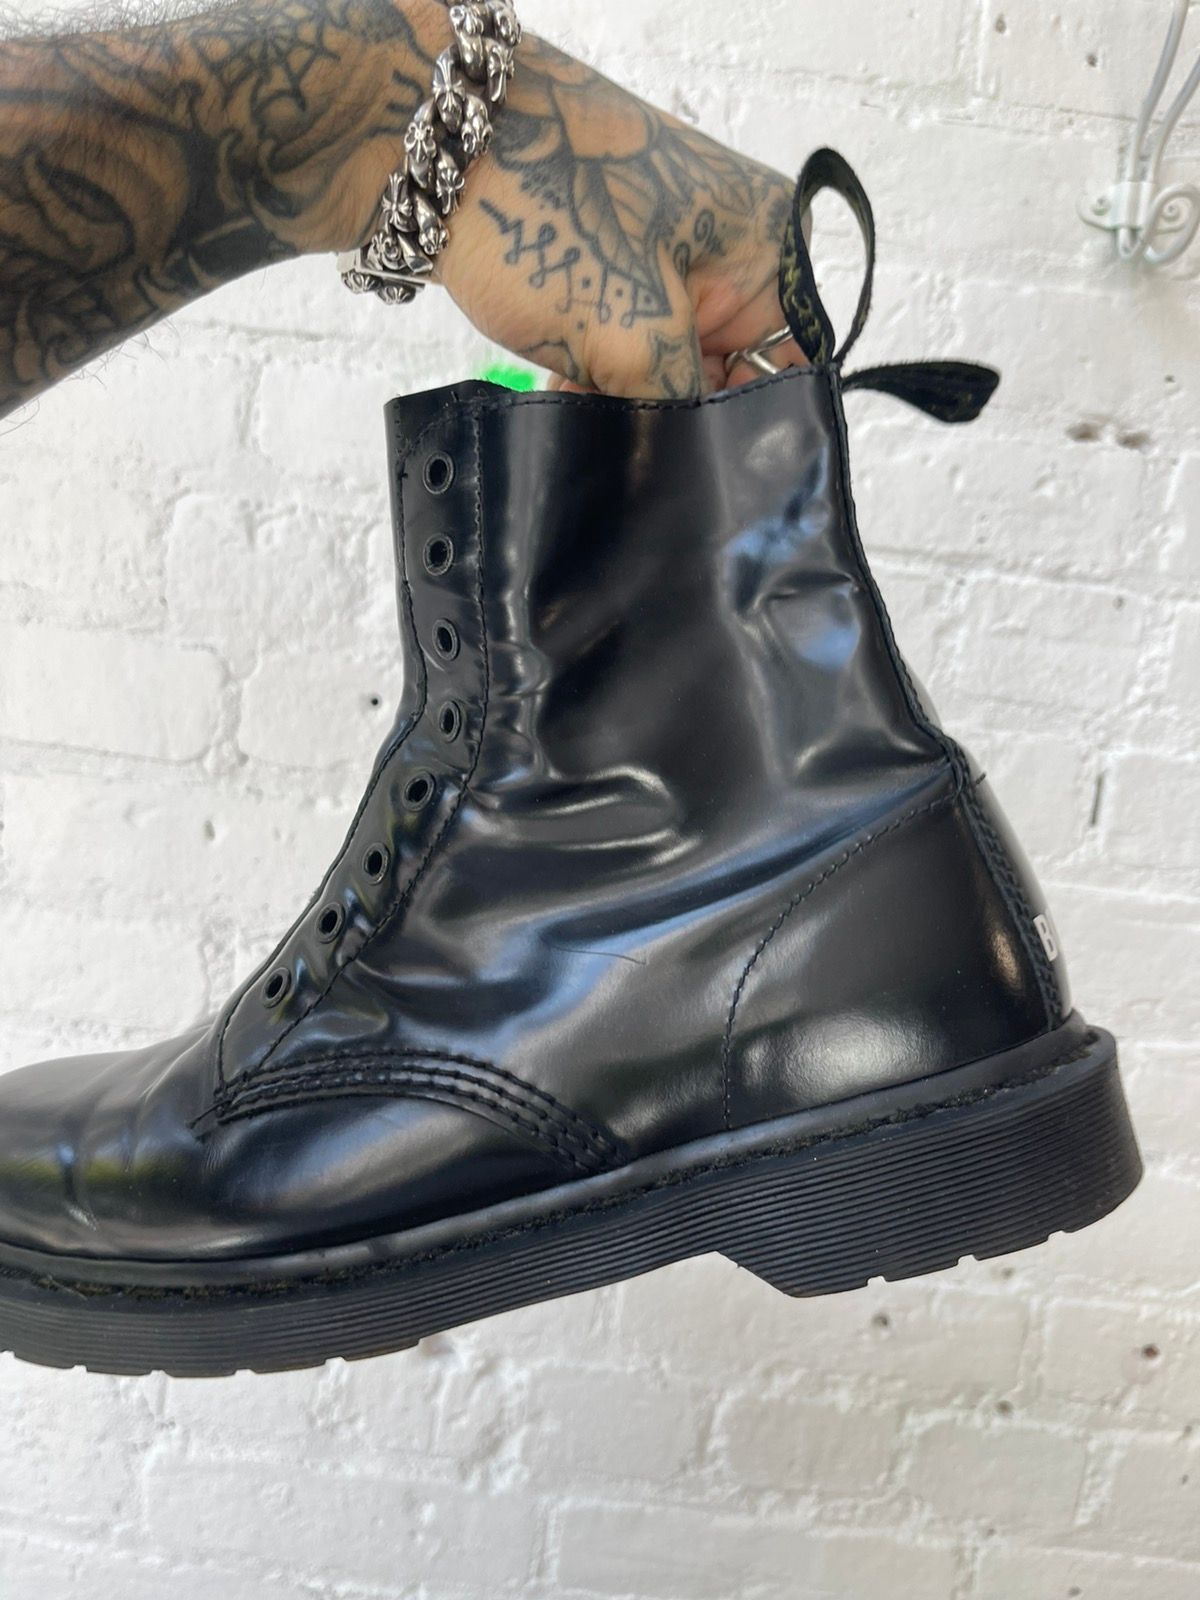 Vetements X Doc Martens BORDER LINE leather Boots SZ 10